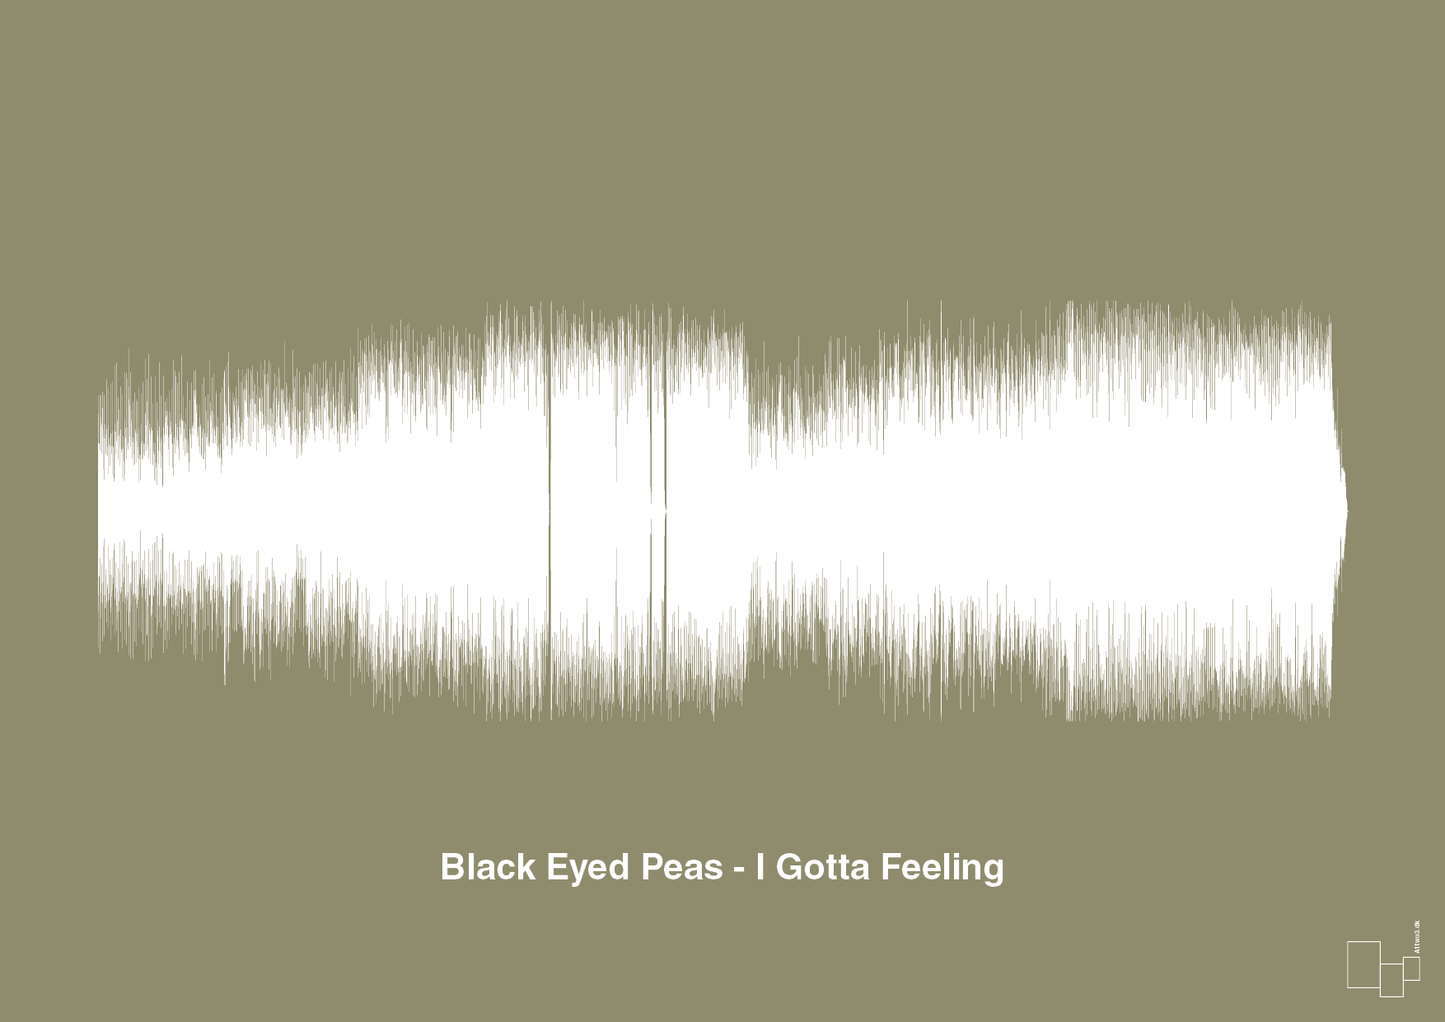 black eyed peas - i gotta feeling - Plakat med Musik i Misty Forrest